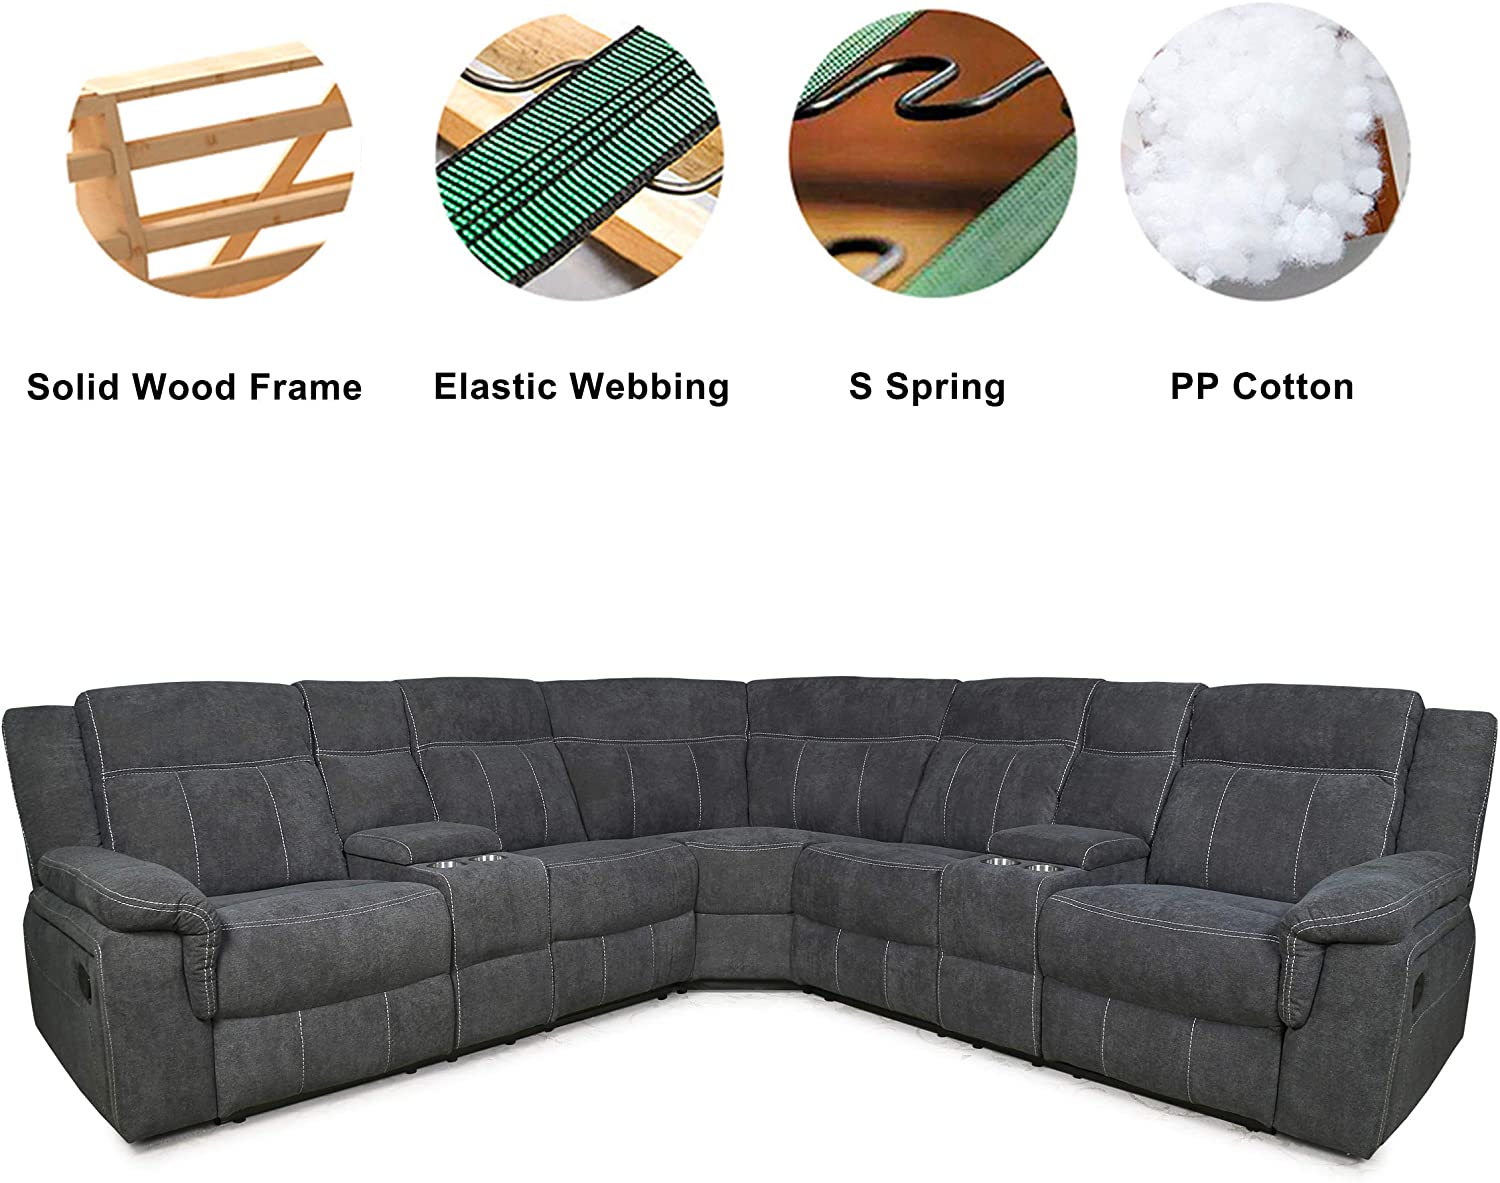 Bọc ghế sofa biện pháp cứu nguy cho đệm ghế bị chảy xệ